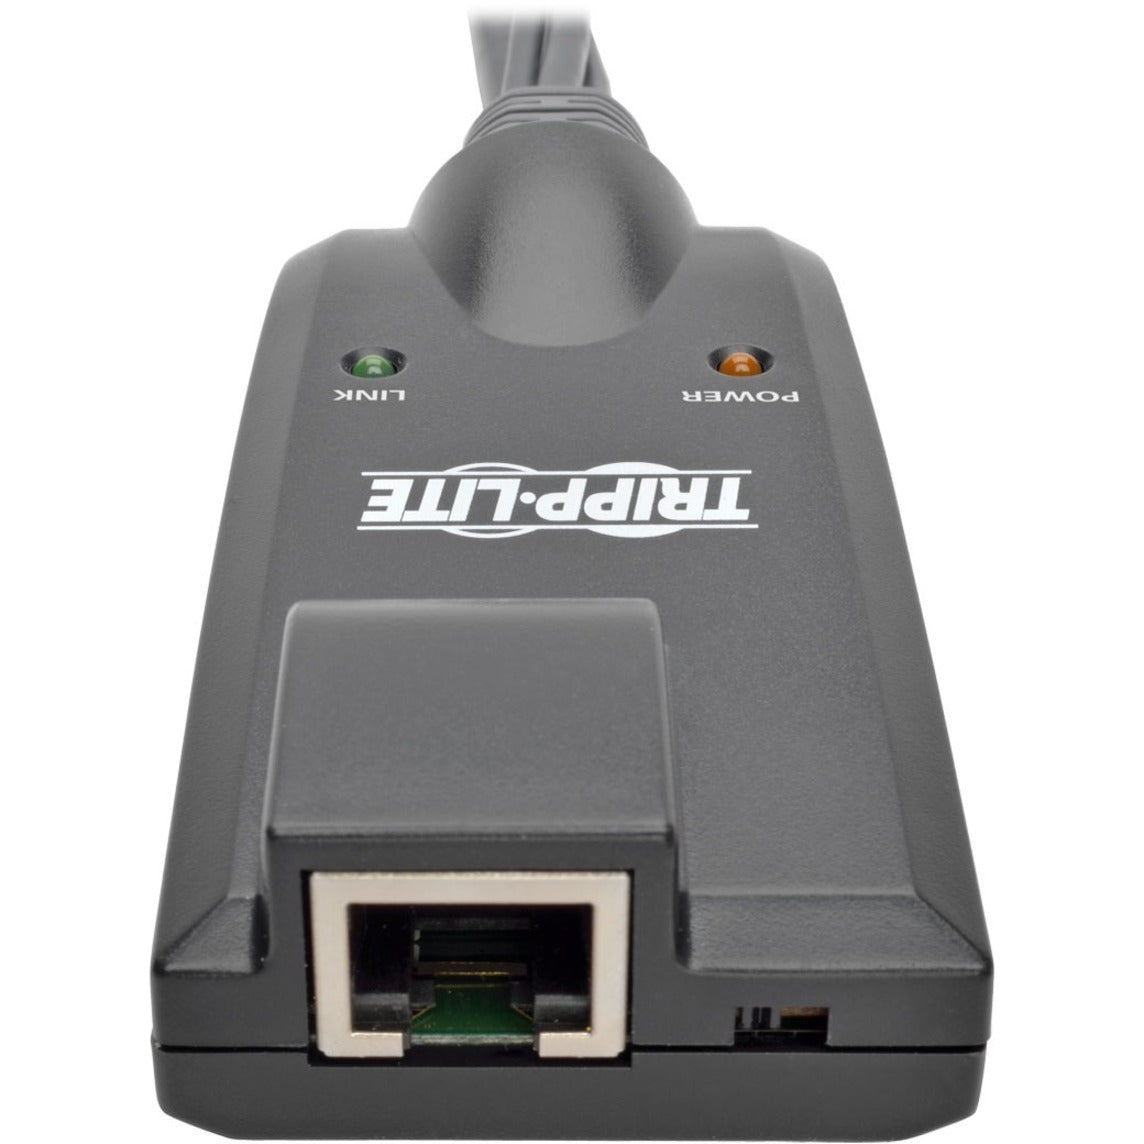 تريب لايت B055-001-USB-VA نتديريكتور وحدة واجهة خادم USB ، موسع KVM مع منافذ USB ، VGA ، سماعة رأس ، ميكروفون ، وشبكة (منافذ RJ-45)  العلامة التجارية: تريب لايت